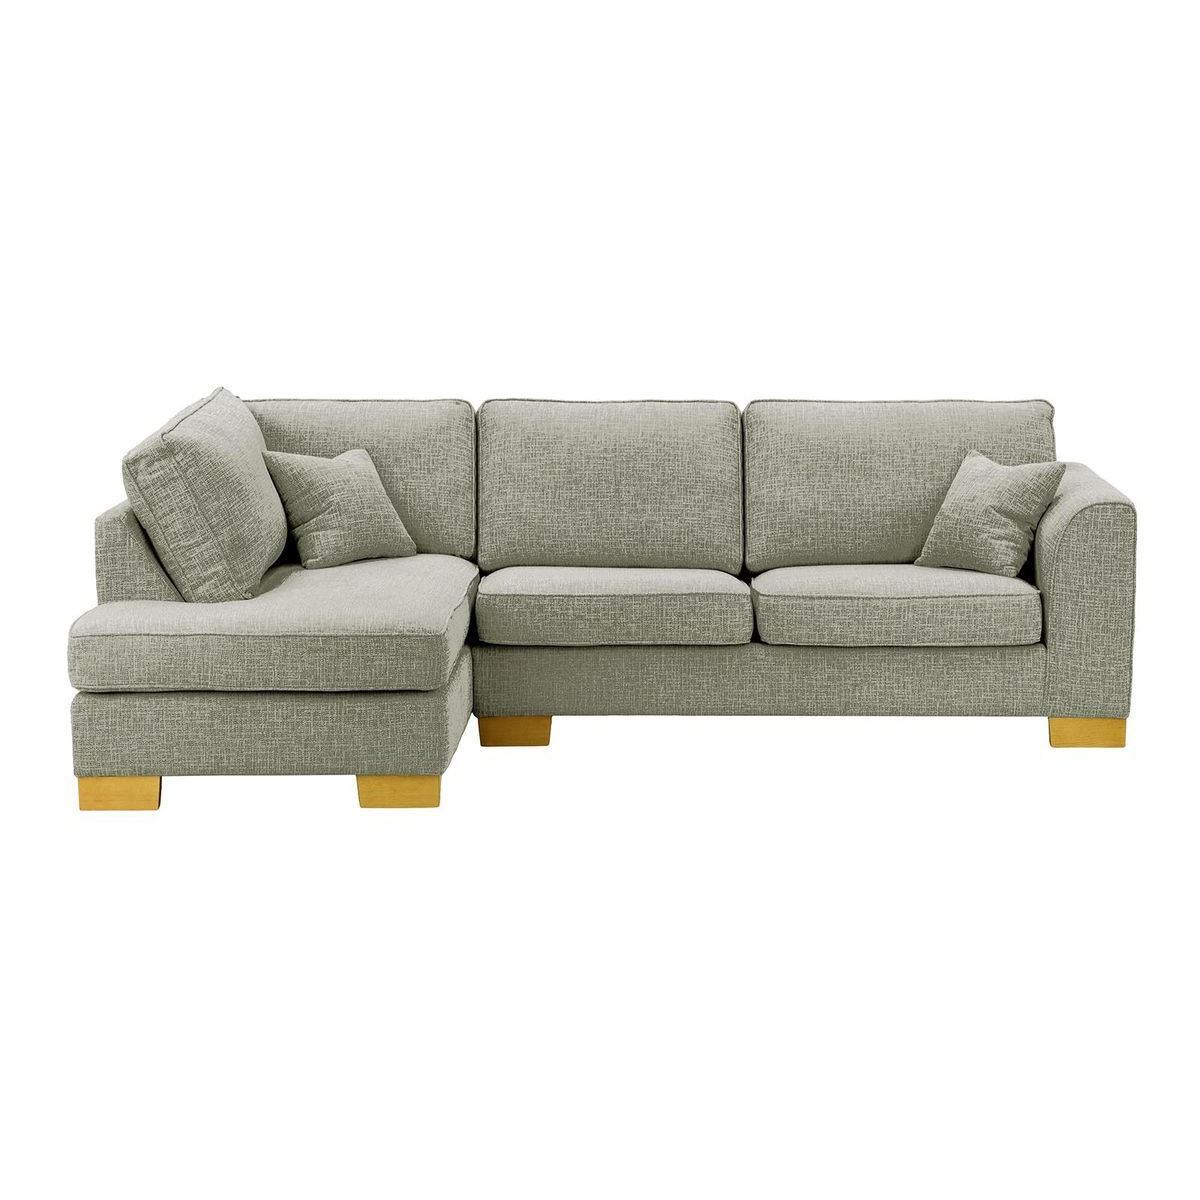 Avos Left Hand Corner Sofa Bed, dark green, Leg colour: white - image 1